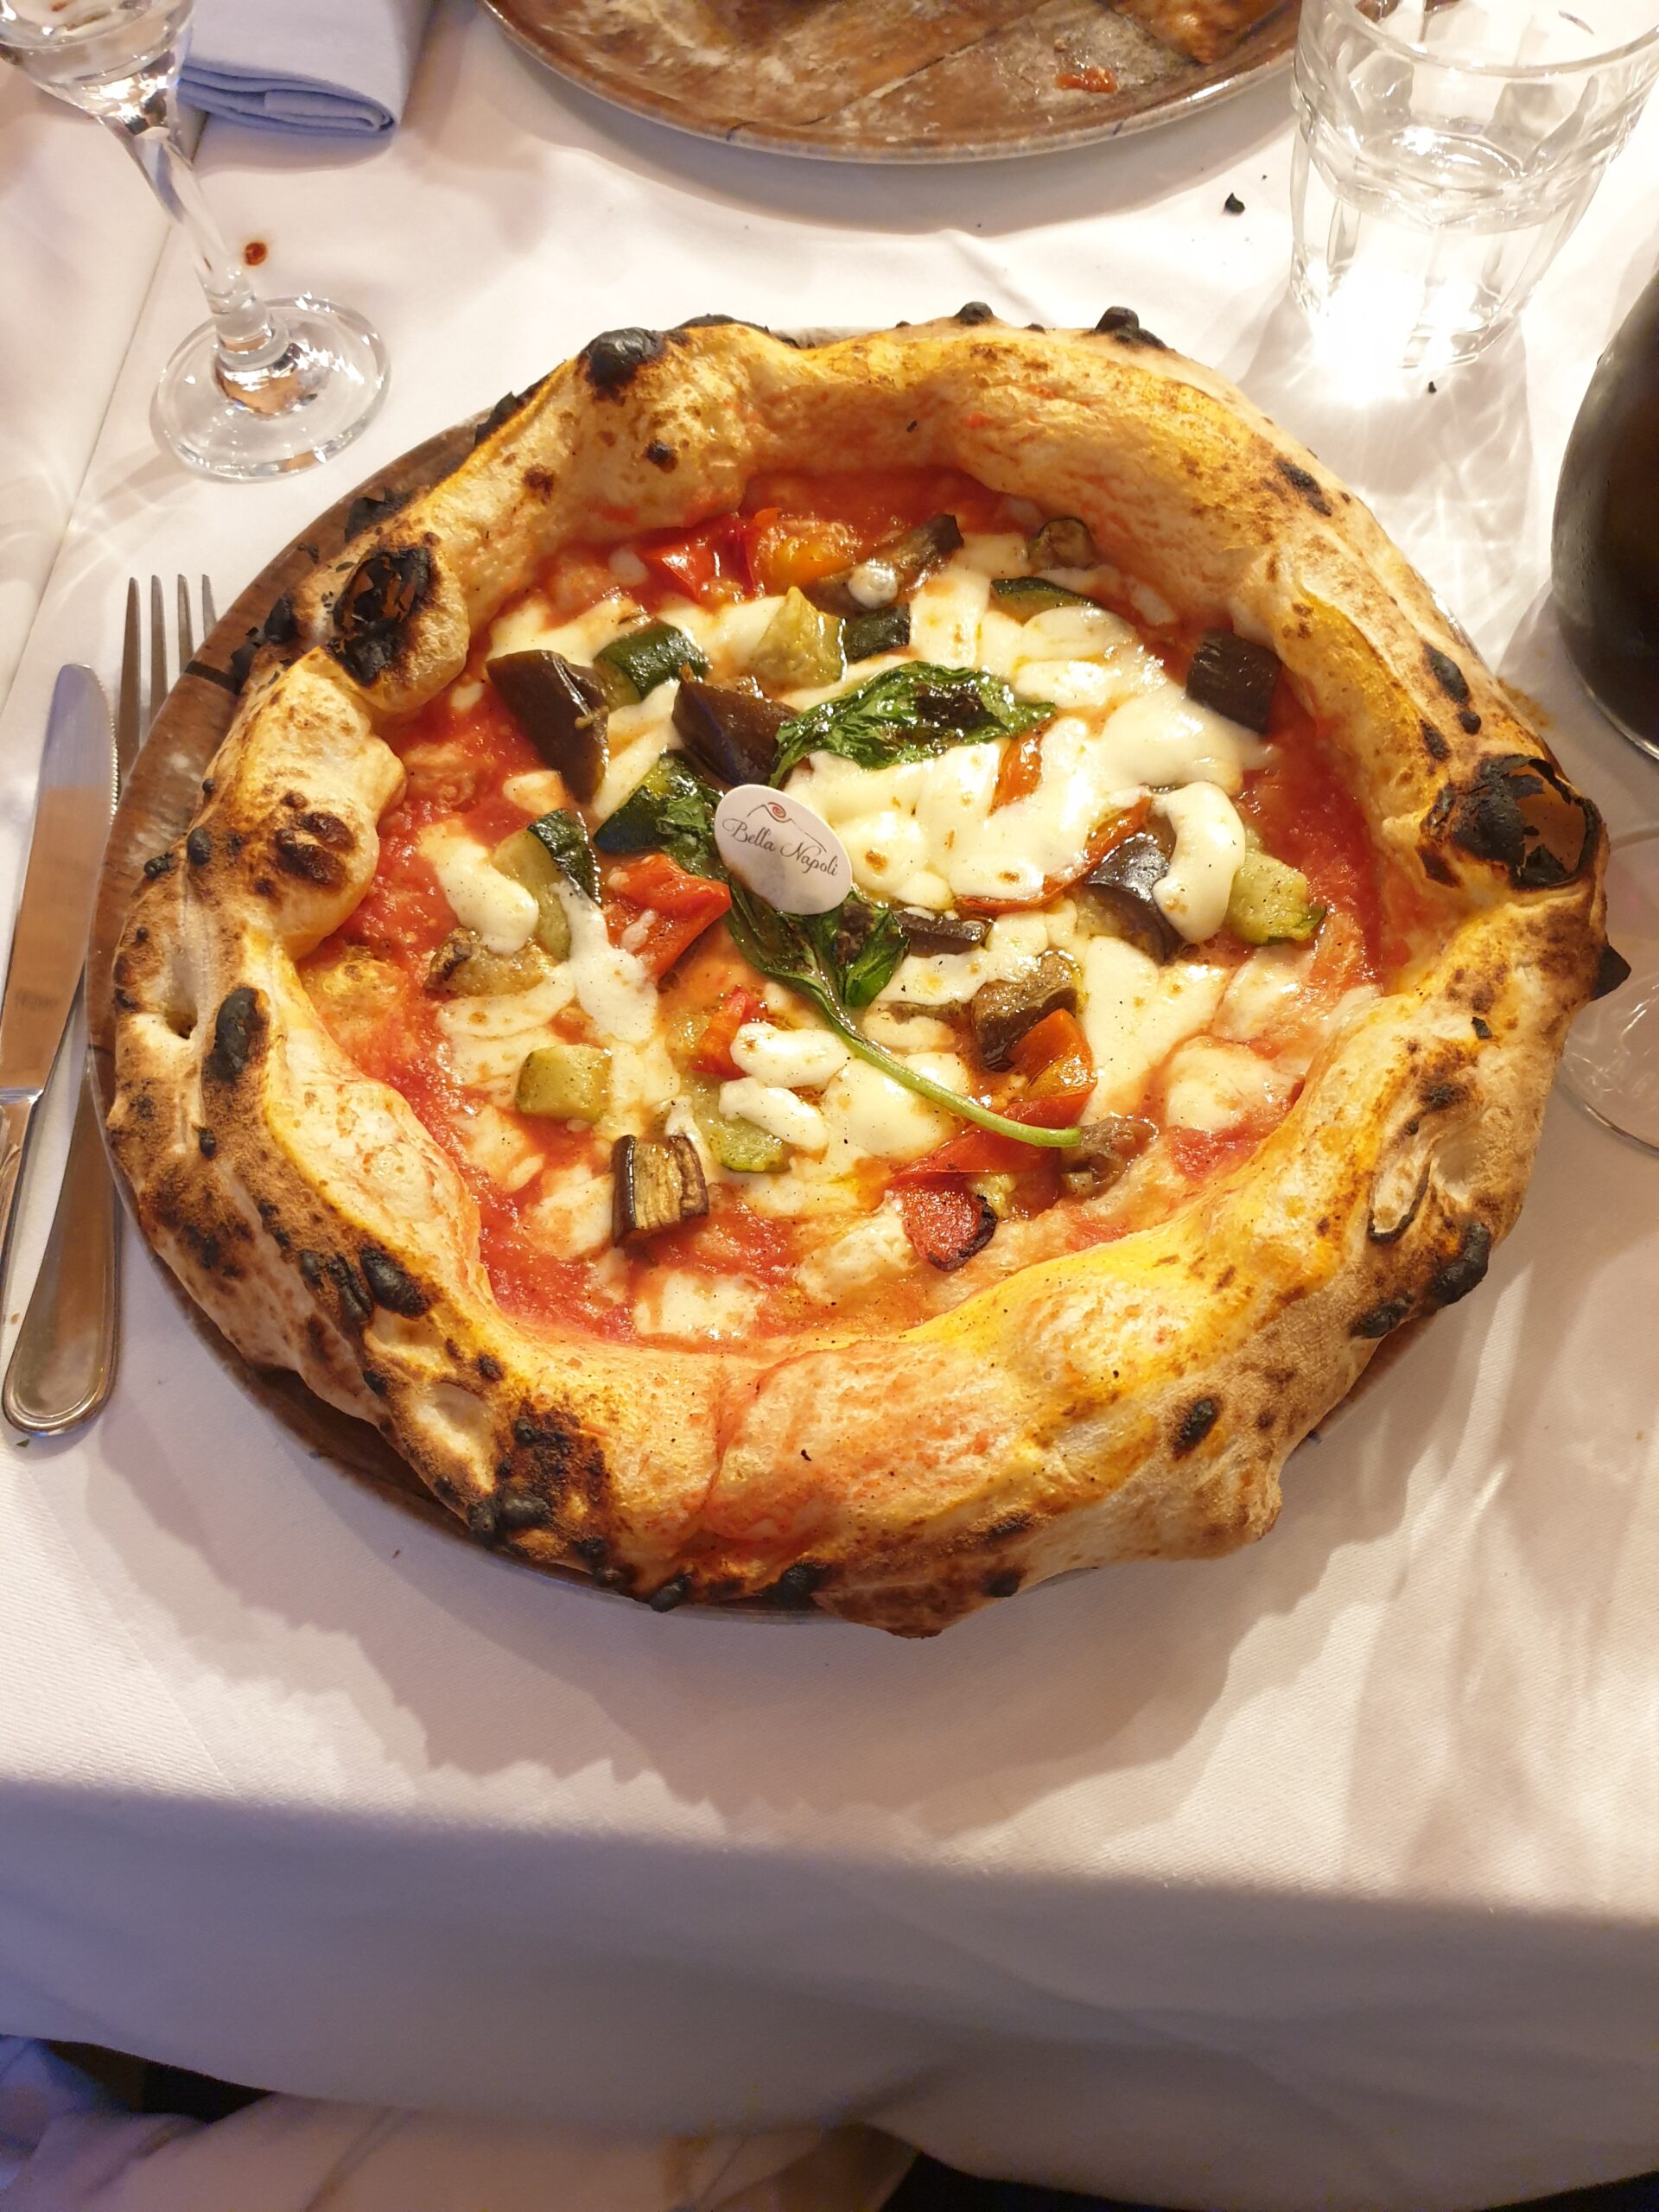 Pizzeria Bella Napoli